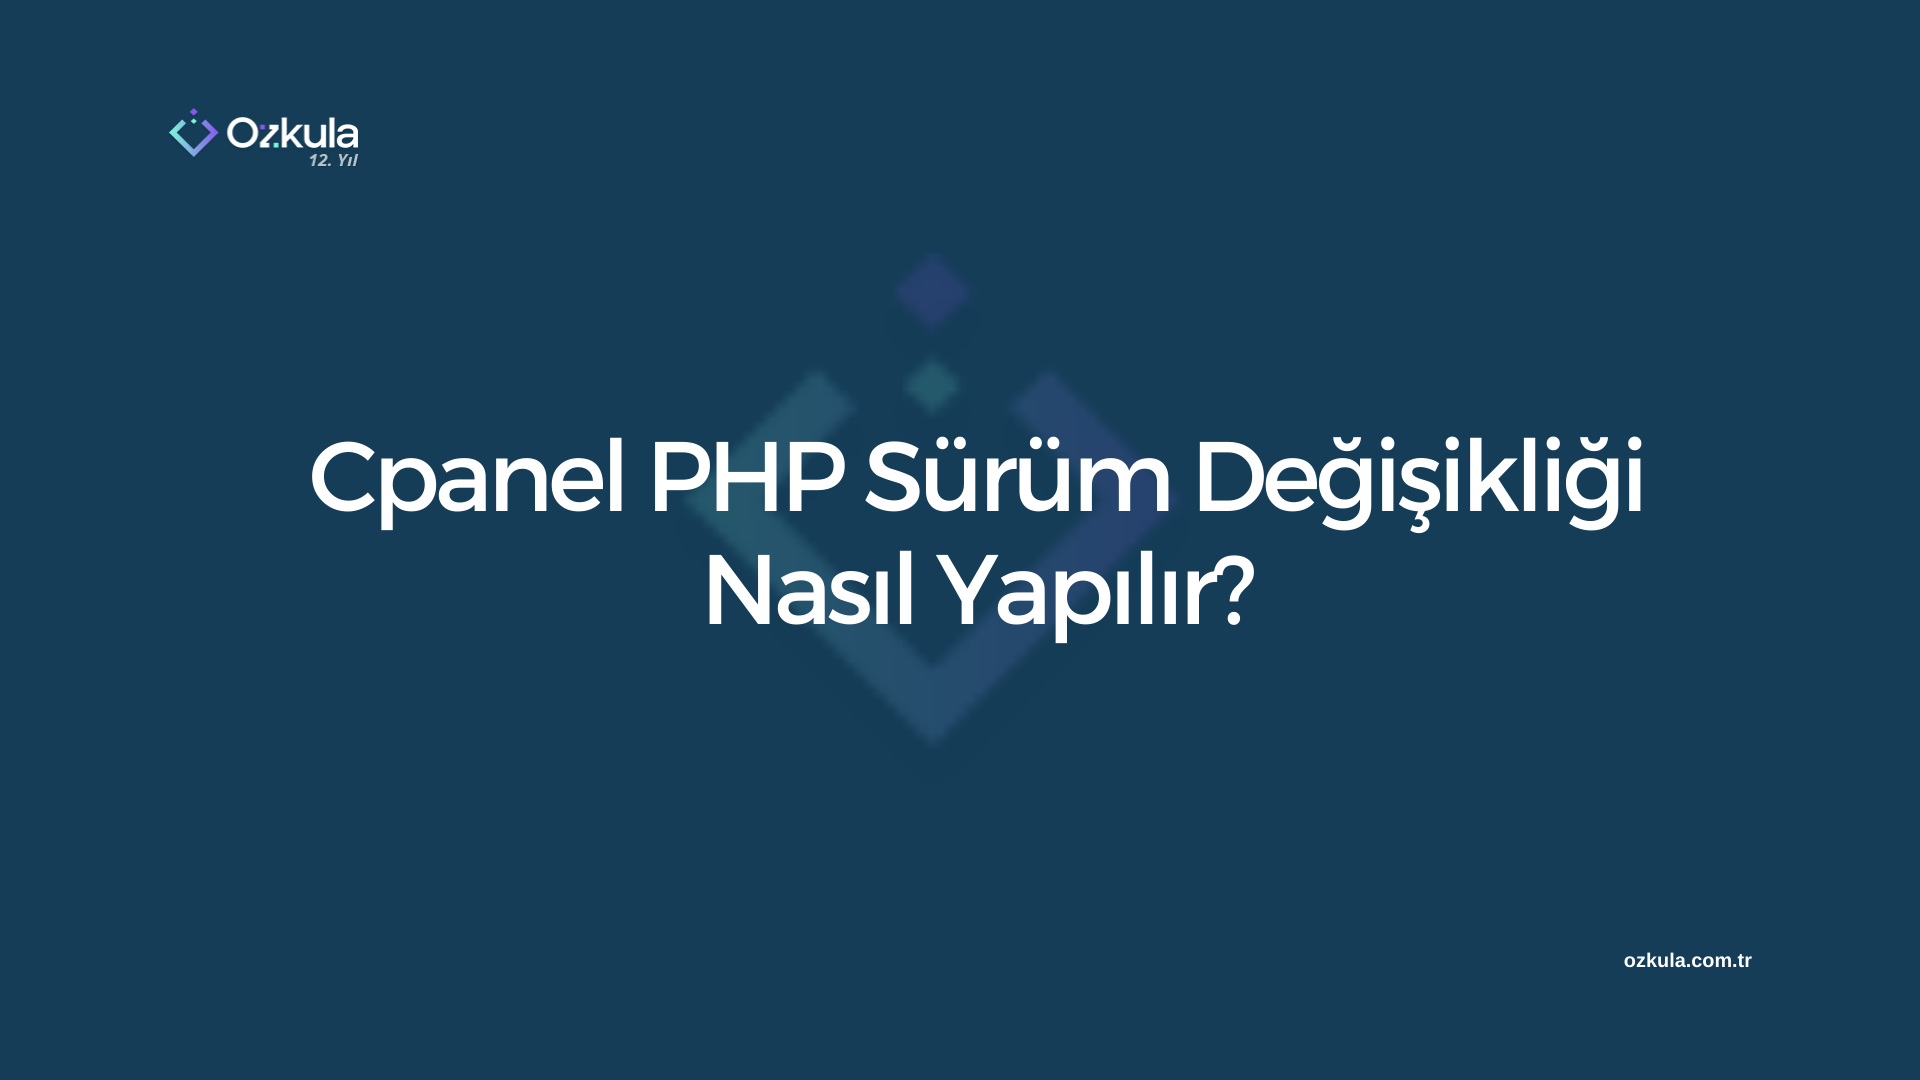 Cpanel PHP Sürüm Değişikliği Nasıl Yapılır?